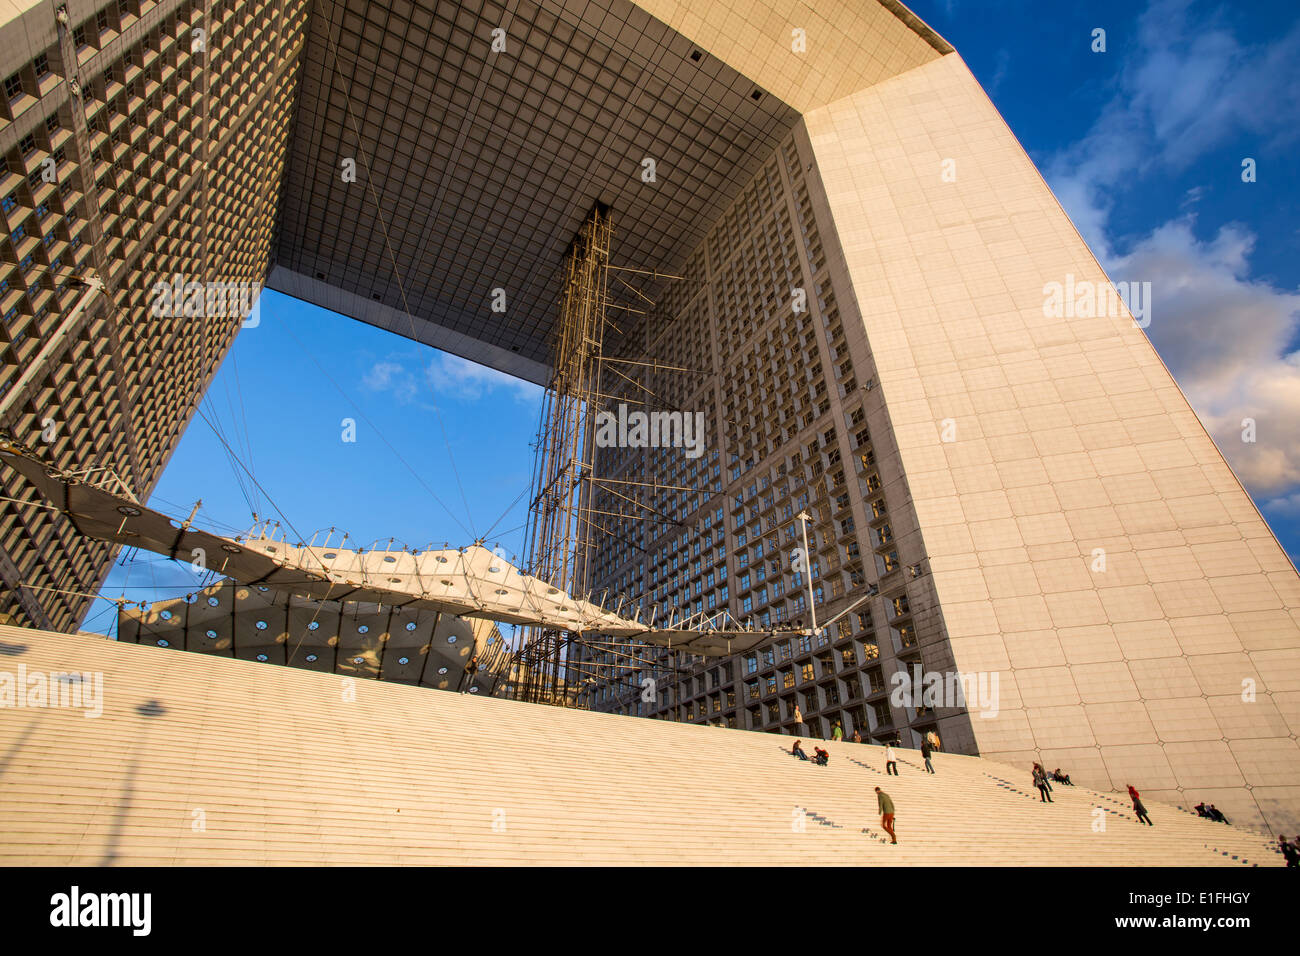 La Grande Arche in the modern business district - La Defense, Paris, France Stock Photo